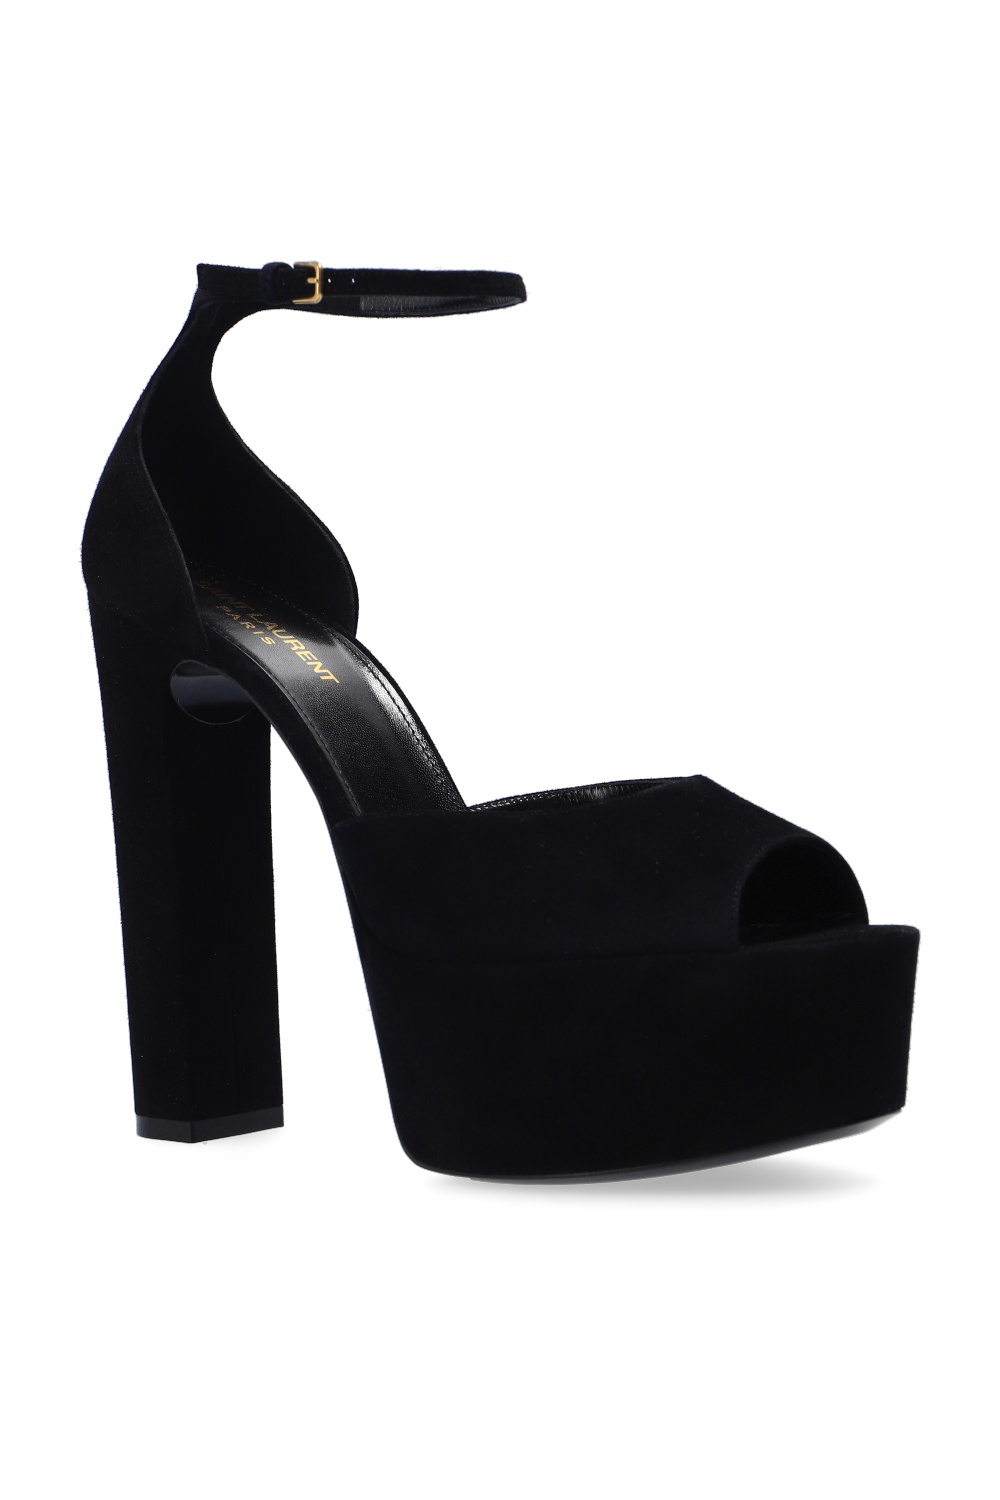 Saint Laurent ‘Jodie’ platform Lavender shoes